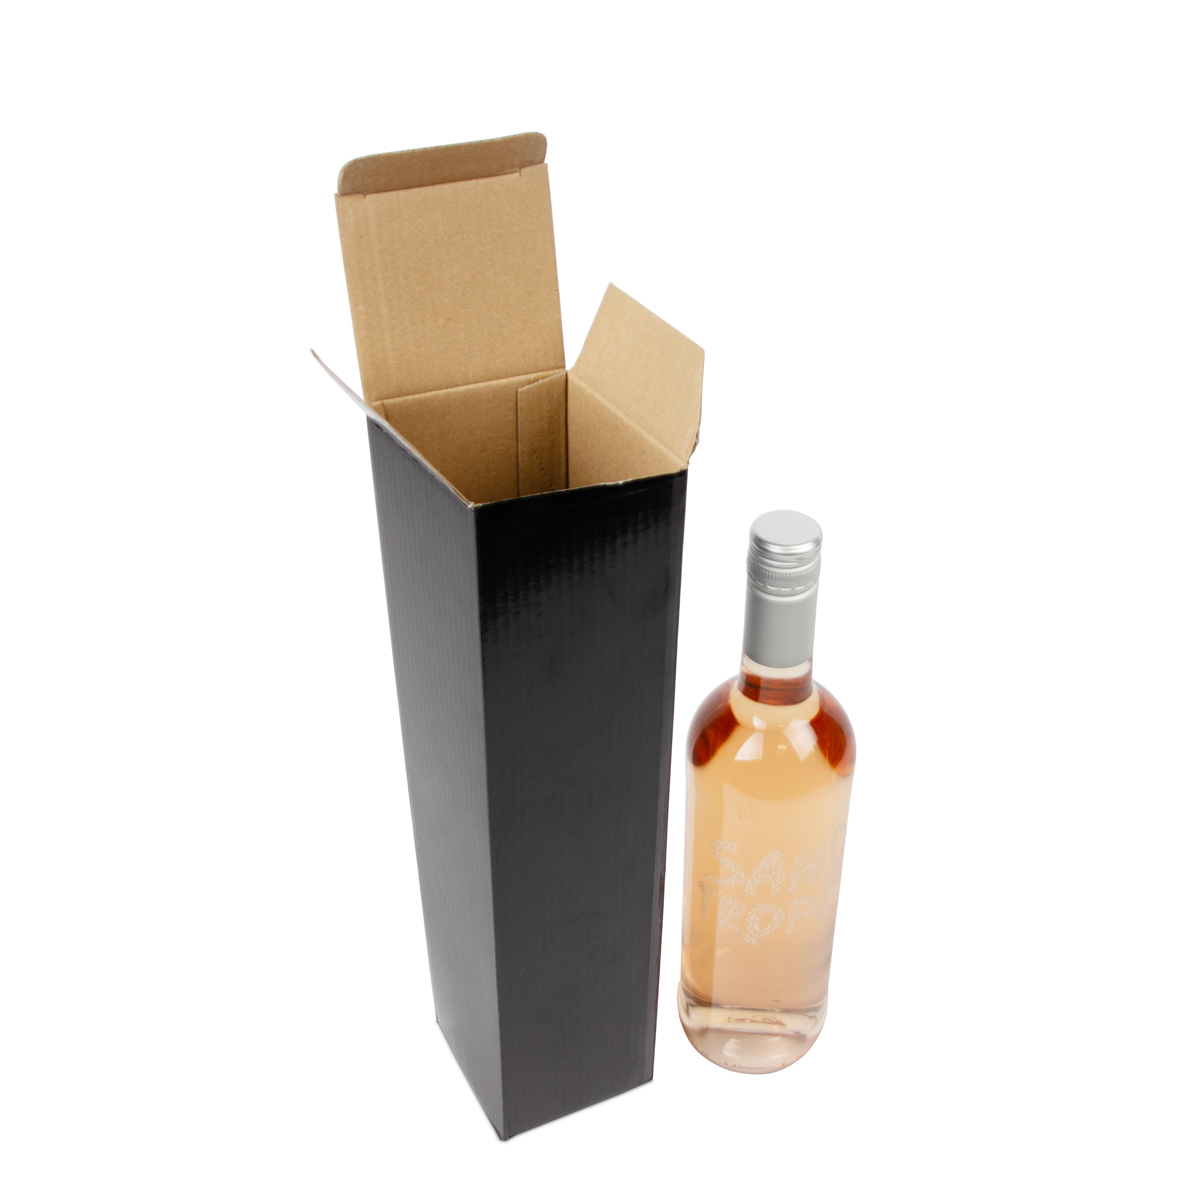 Weinflaschenboxen aus Pappe